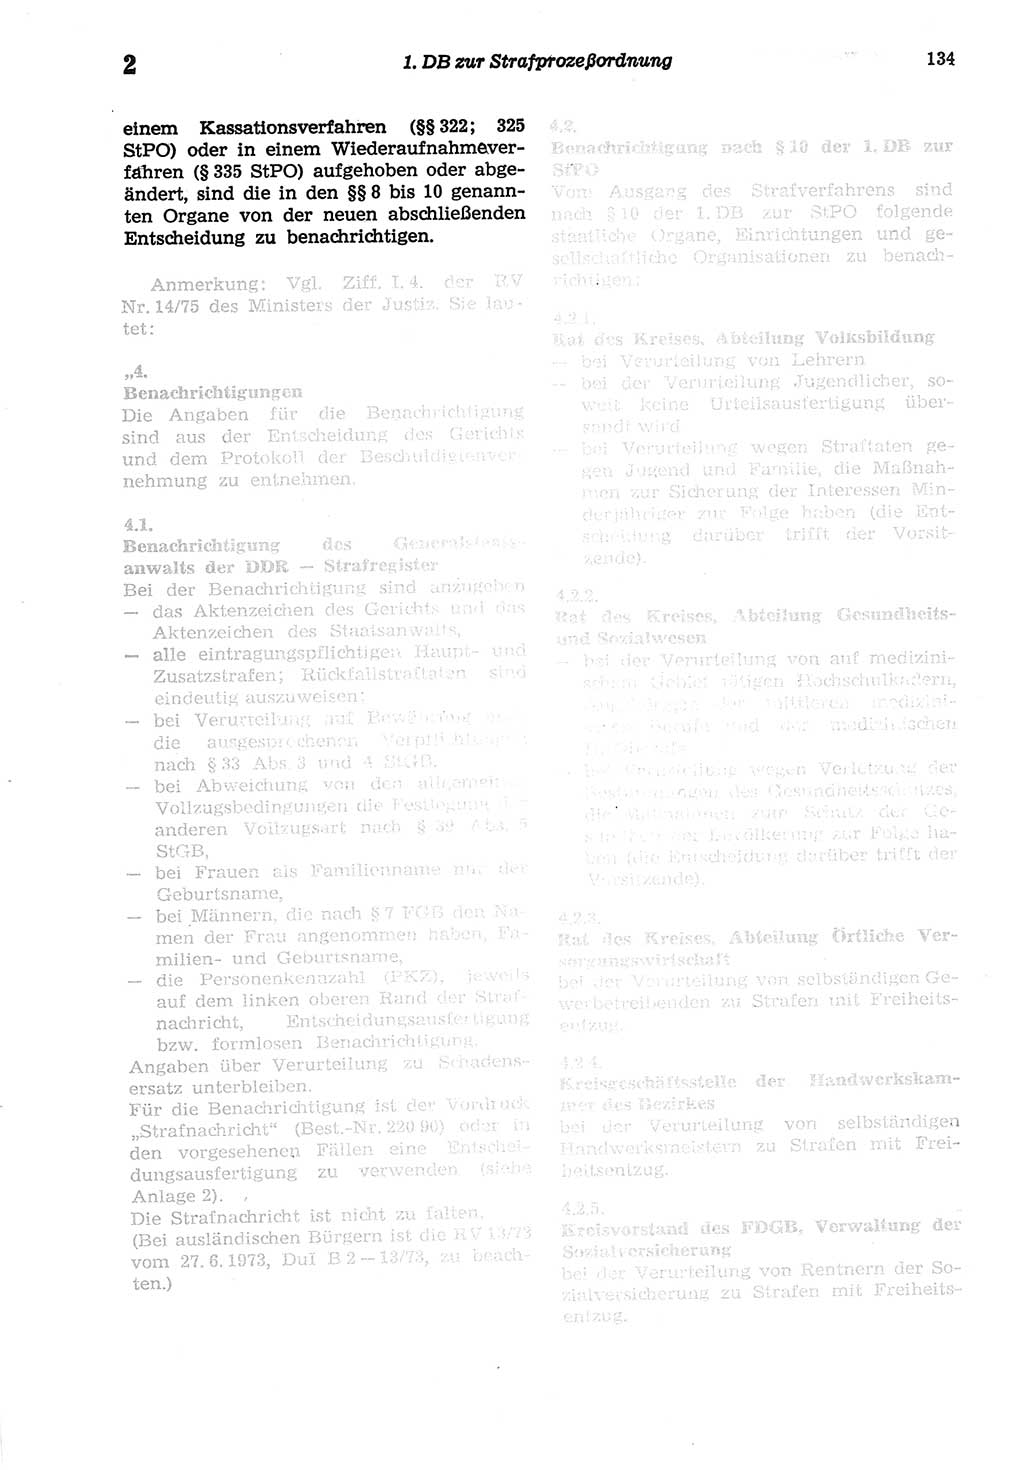 Strafprozeßordnung (StPO) der Deutschen Demokratischen Republik (DDR) sowie angrenzende Gesetze und Bestimmungen 1977, Seite 134 (StPO DDR Ges. Best. 1977, S. 134)